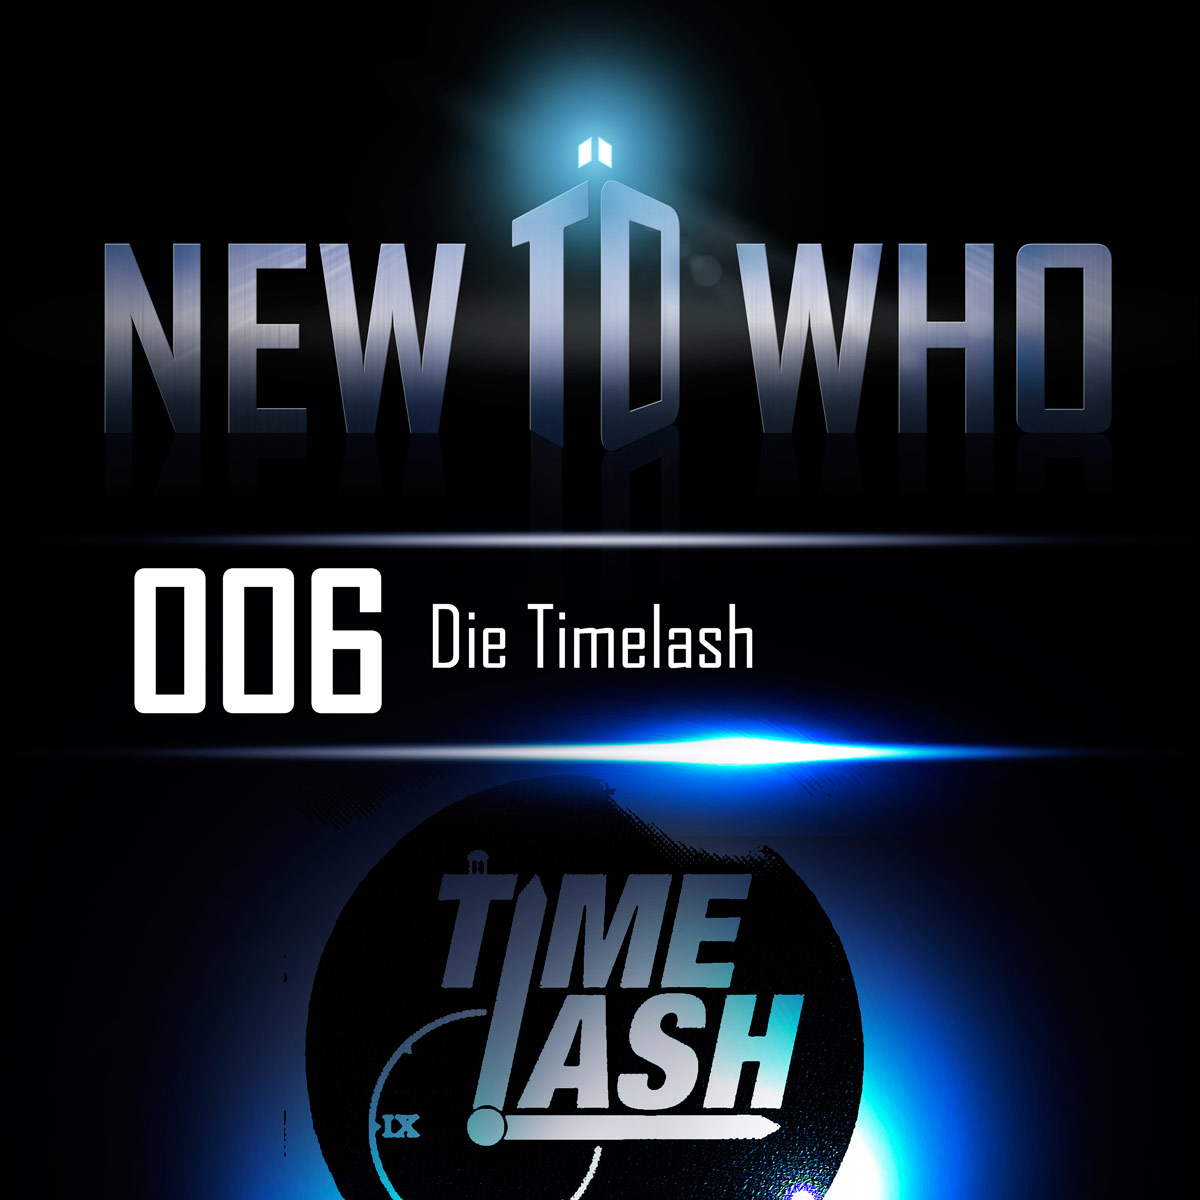 006 - Die TimeLash